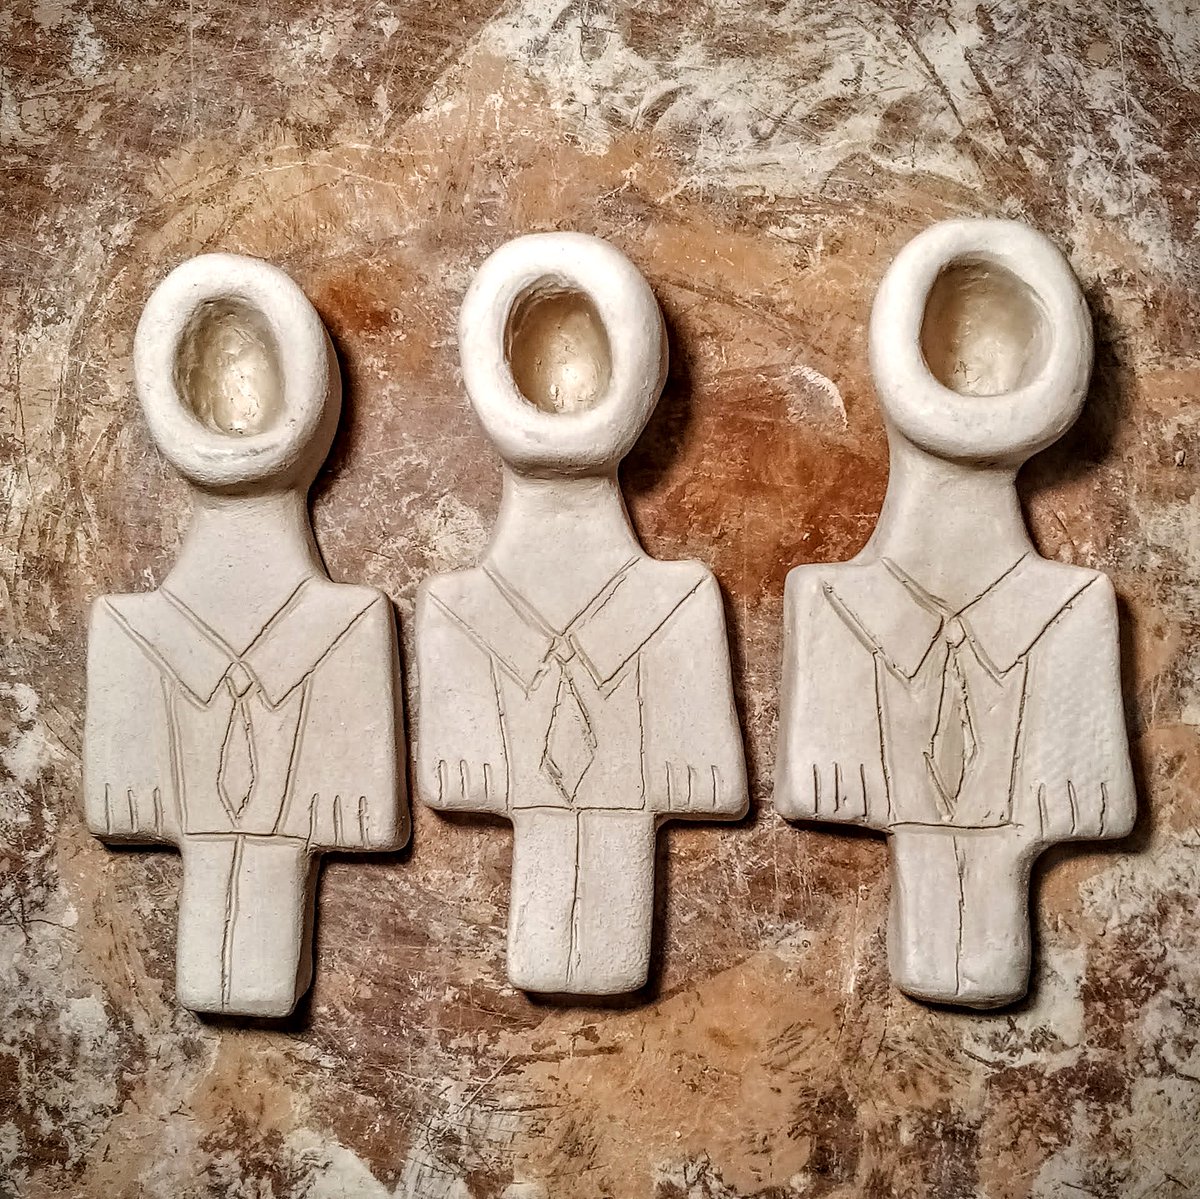 Trio.
#CeramicPipe
#PrimitiveArt
#FigurineHumans